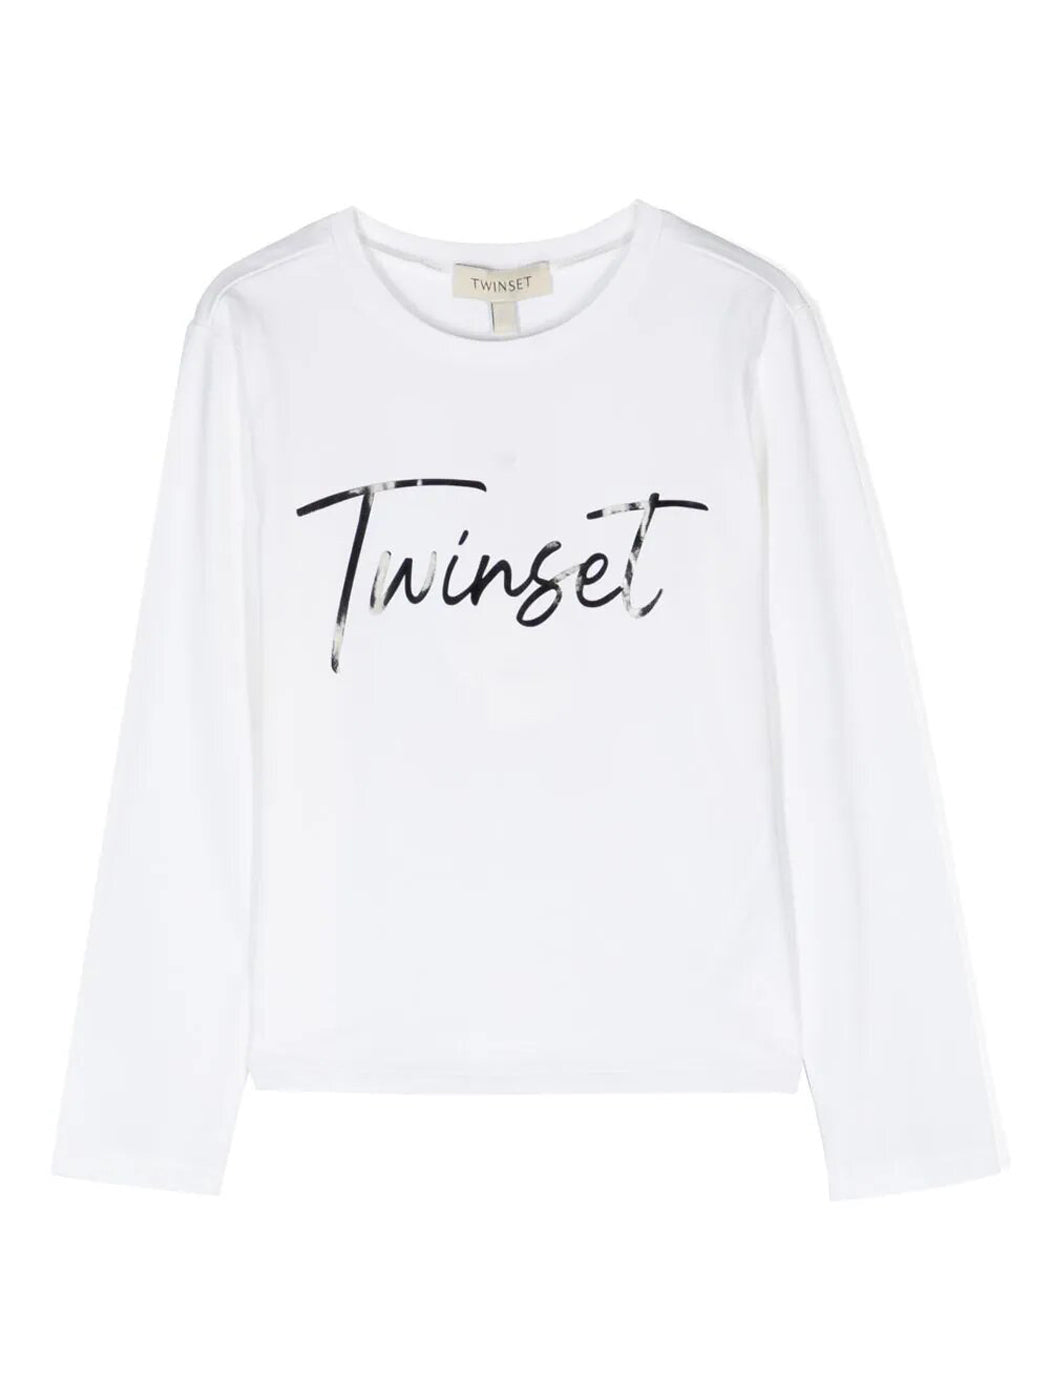 TWINSET Girl's white t-shirt-232GJ215L